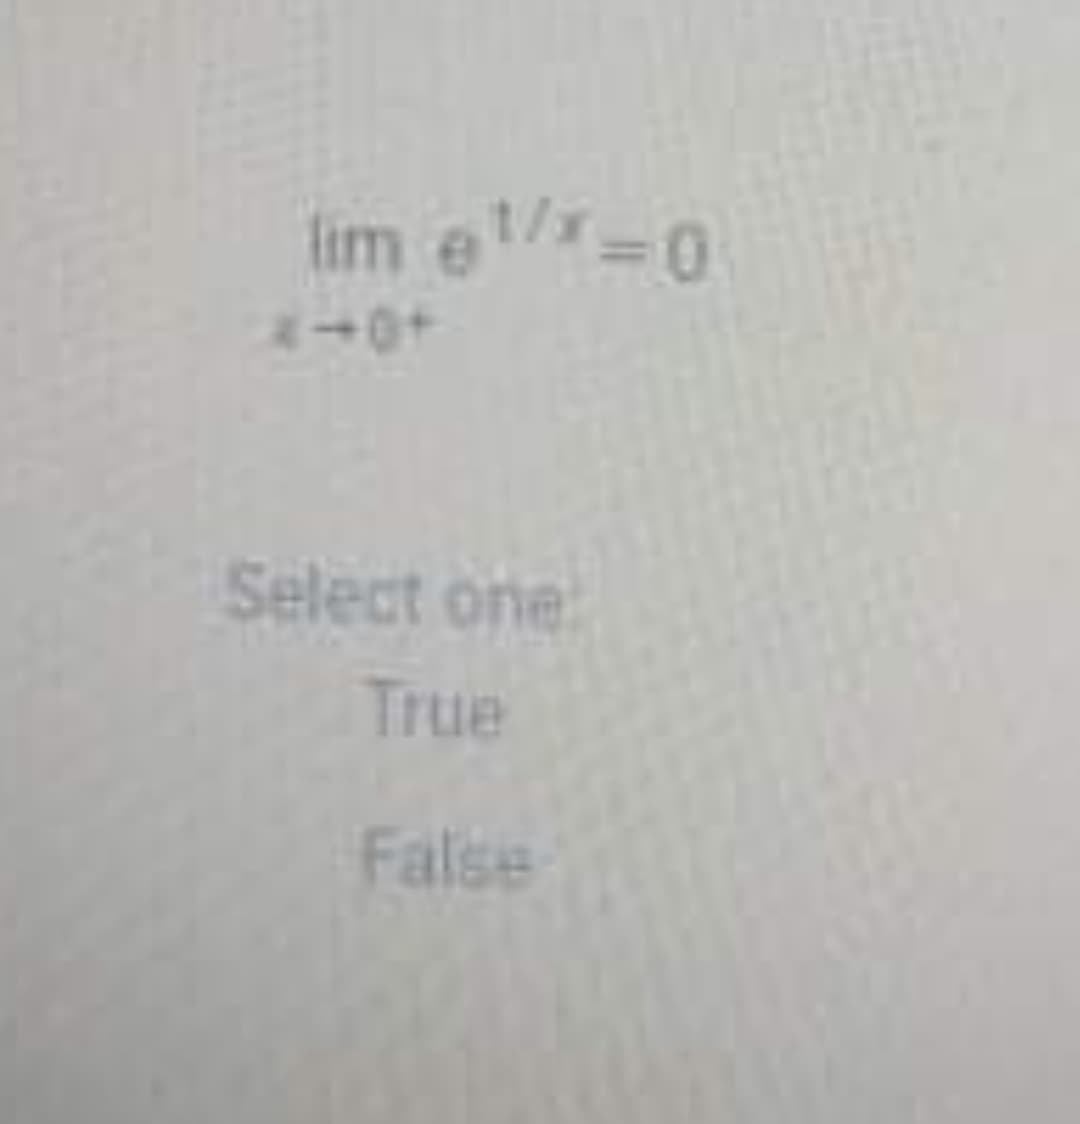 lim e 0
+0+
Select one
True
False
